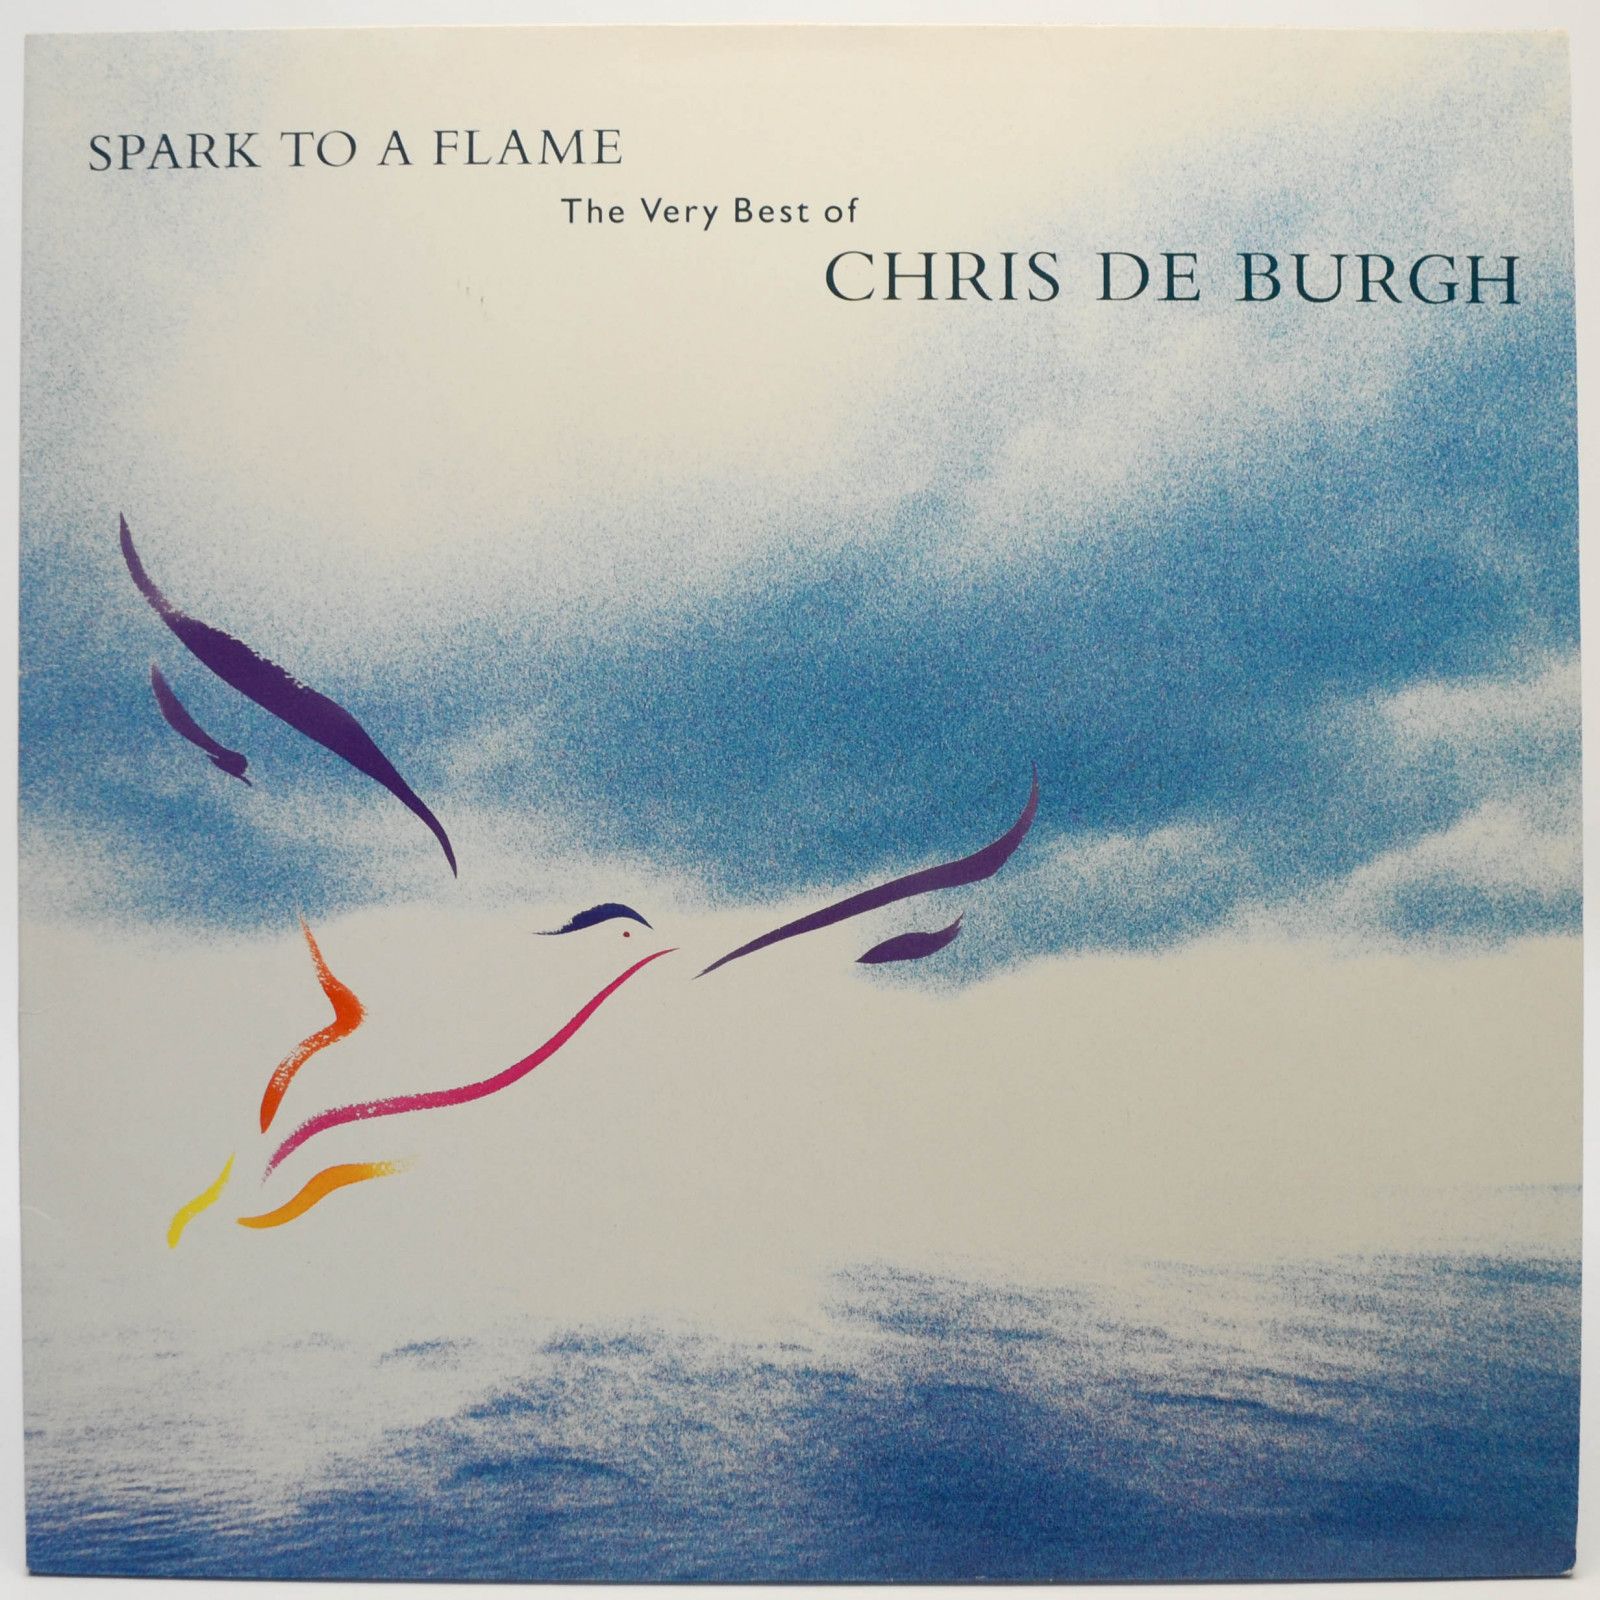 Chris de Burgh — Spark To A Flame (The Very Best Of Chris de Burgh), 1989